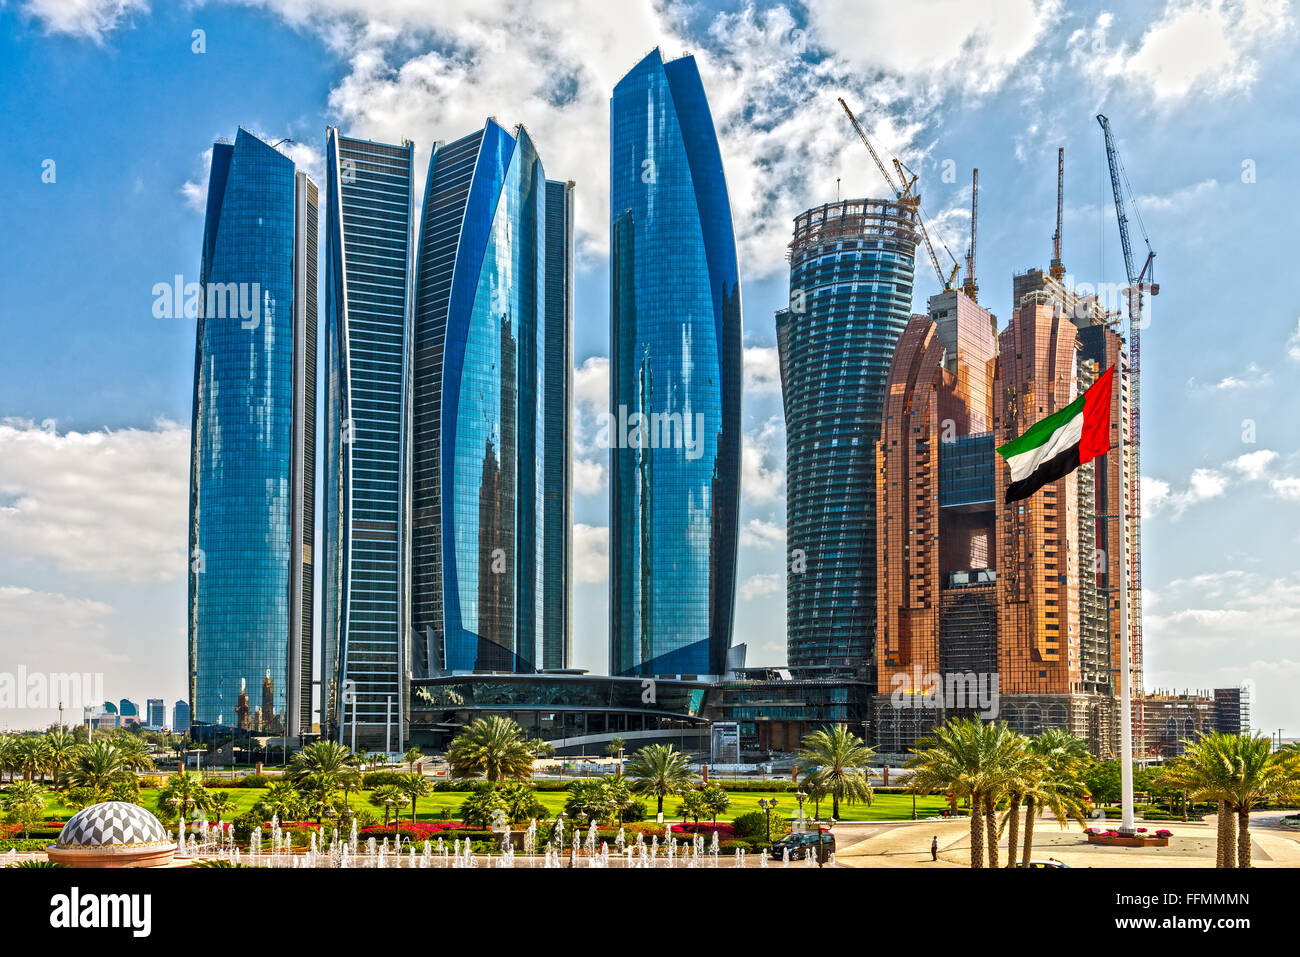 ABU DHABI, Vereinigte Arabische Emirate - 8. Februar 2014: Etihad Towers Gebäude in Abu Dhabi. Vereinigte Arabische Emirate. Fünf Türme Komplex mit 74 Stock Stockfoto